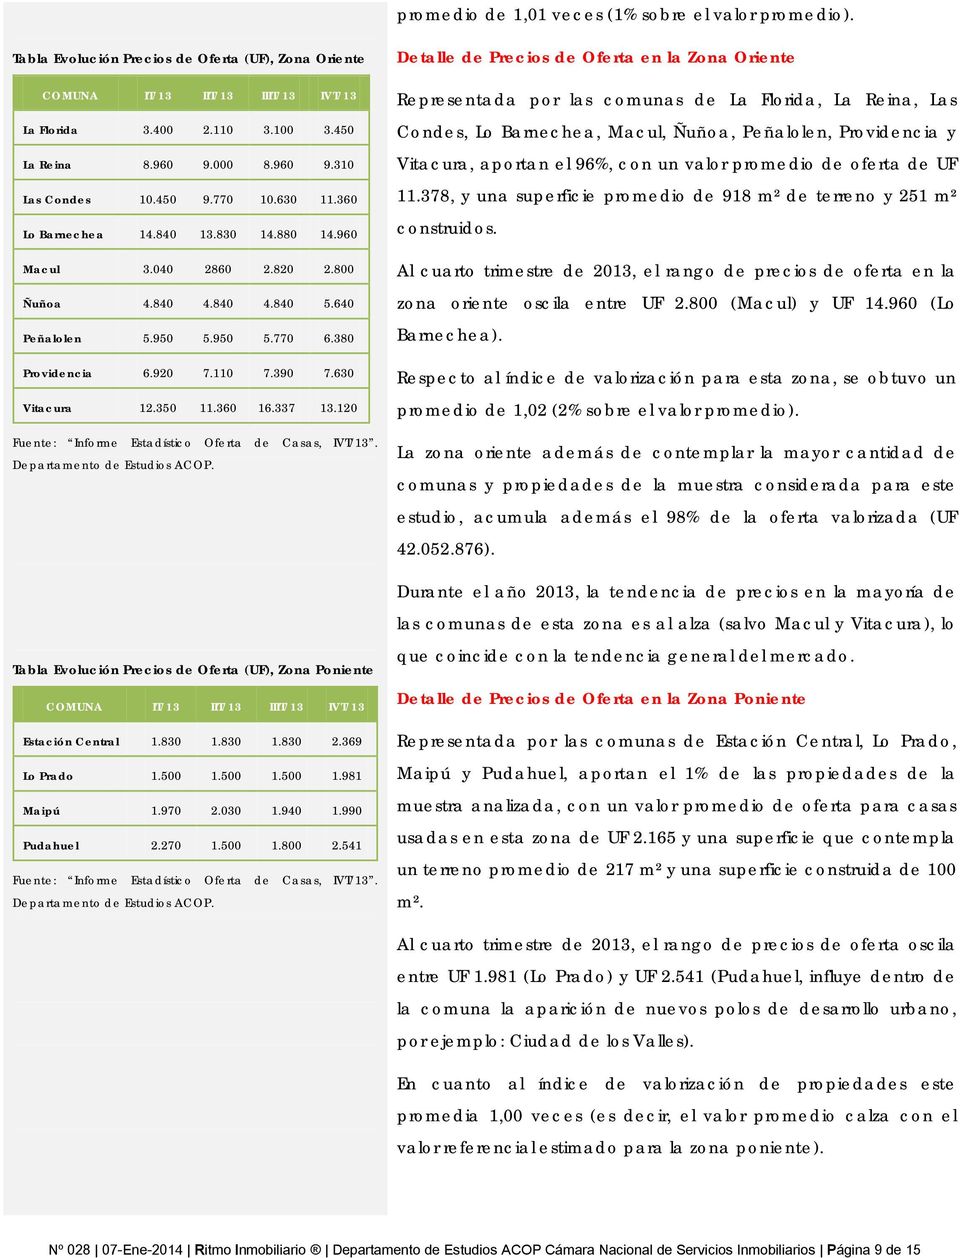 337 13.120 Fuente: Informe Estadístico Oferta de Casas, IVT/13.